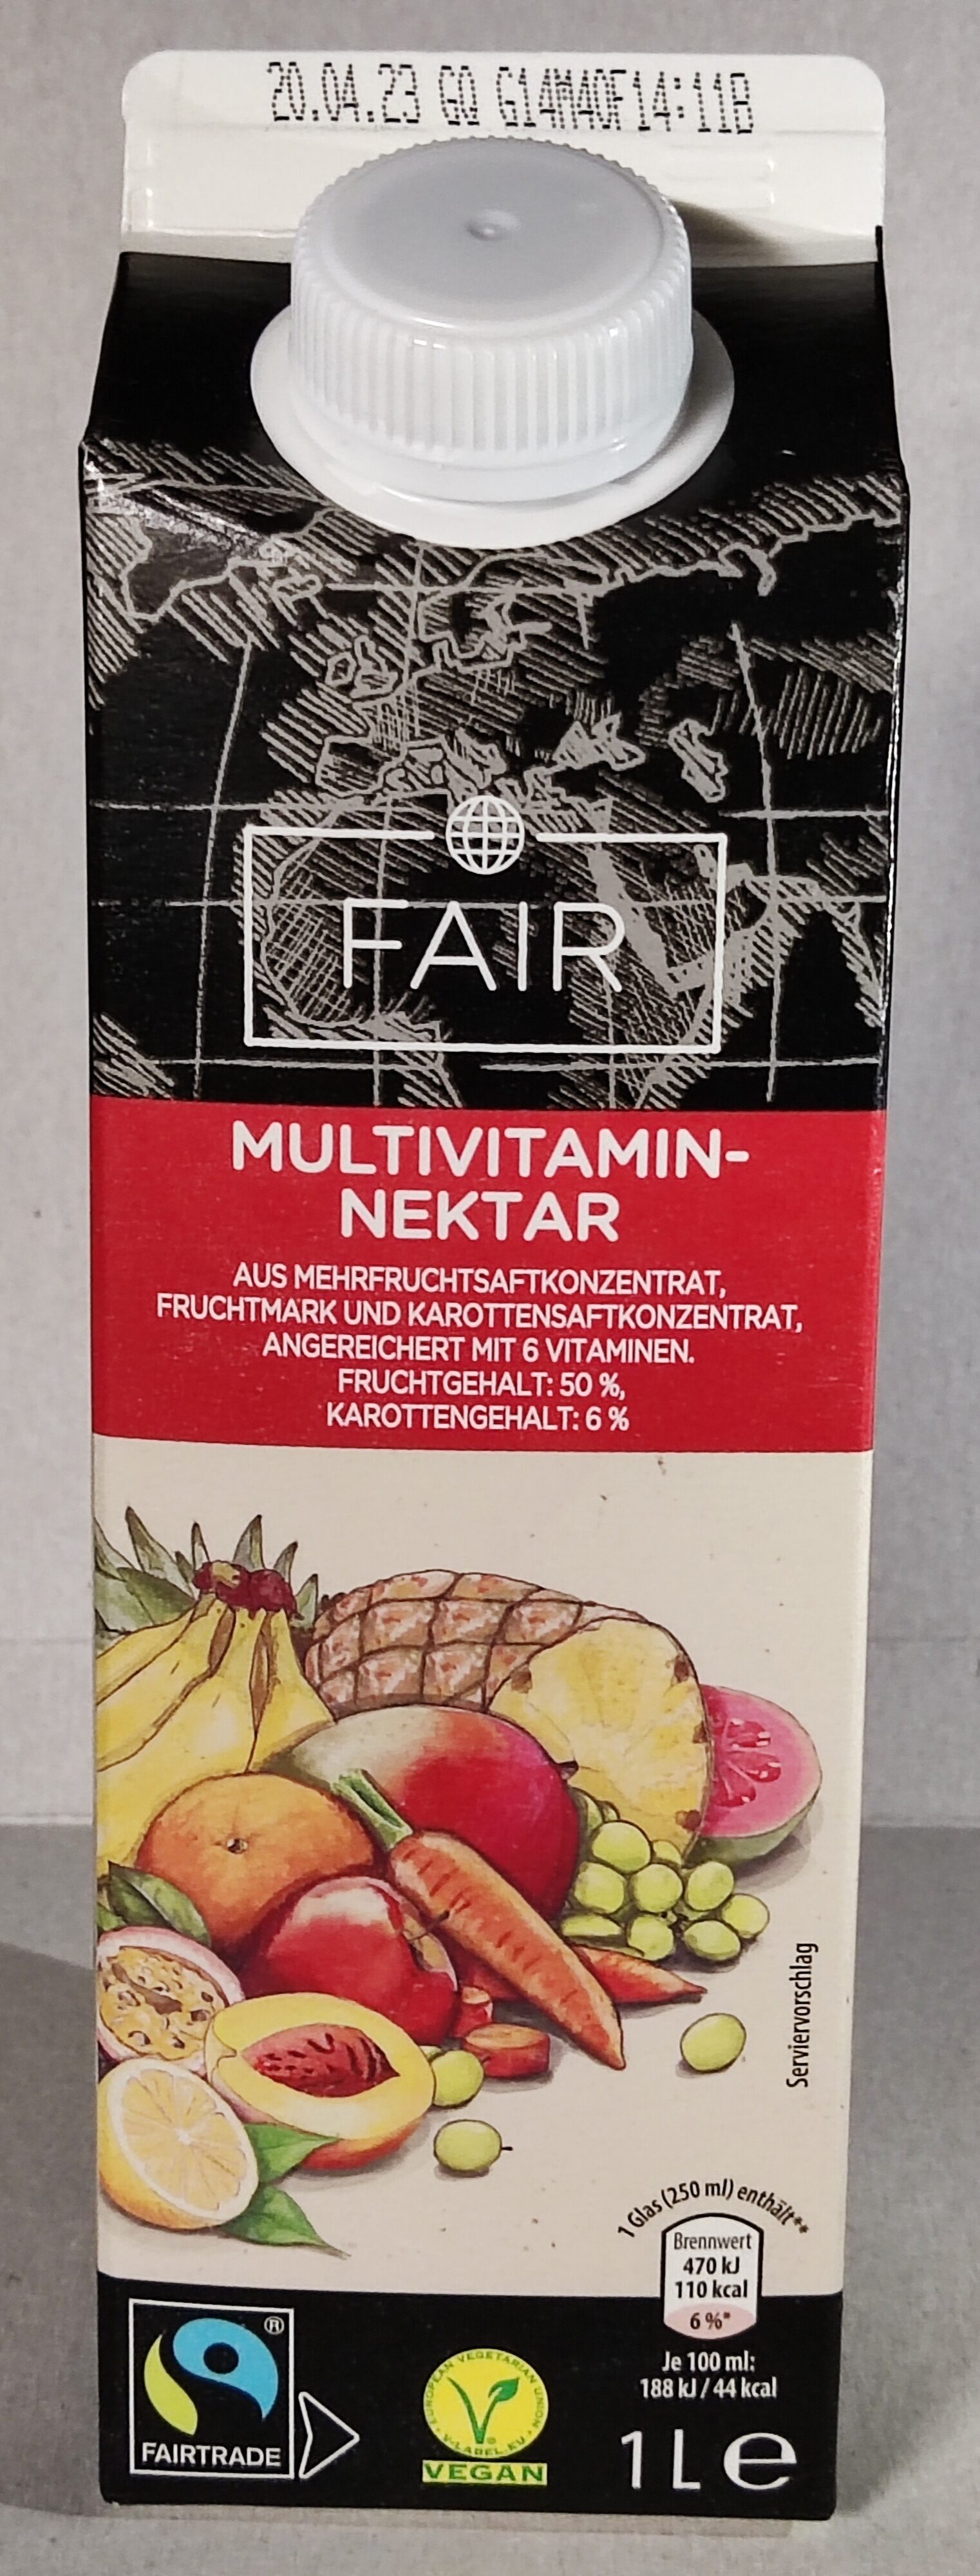 Multivitamin-Nektar - Produkt